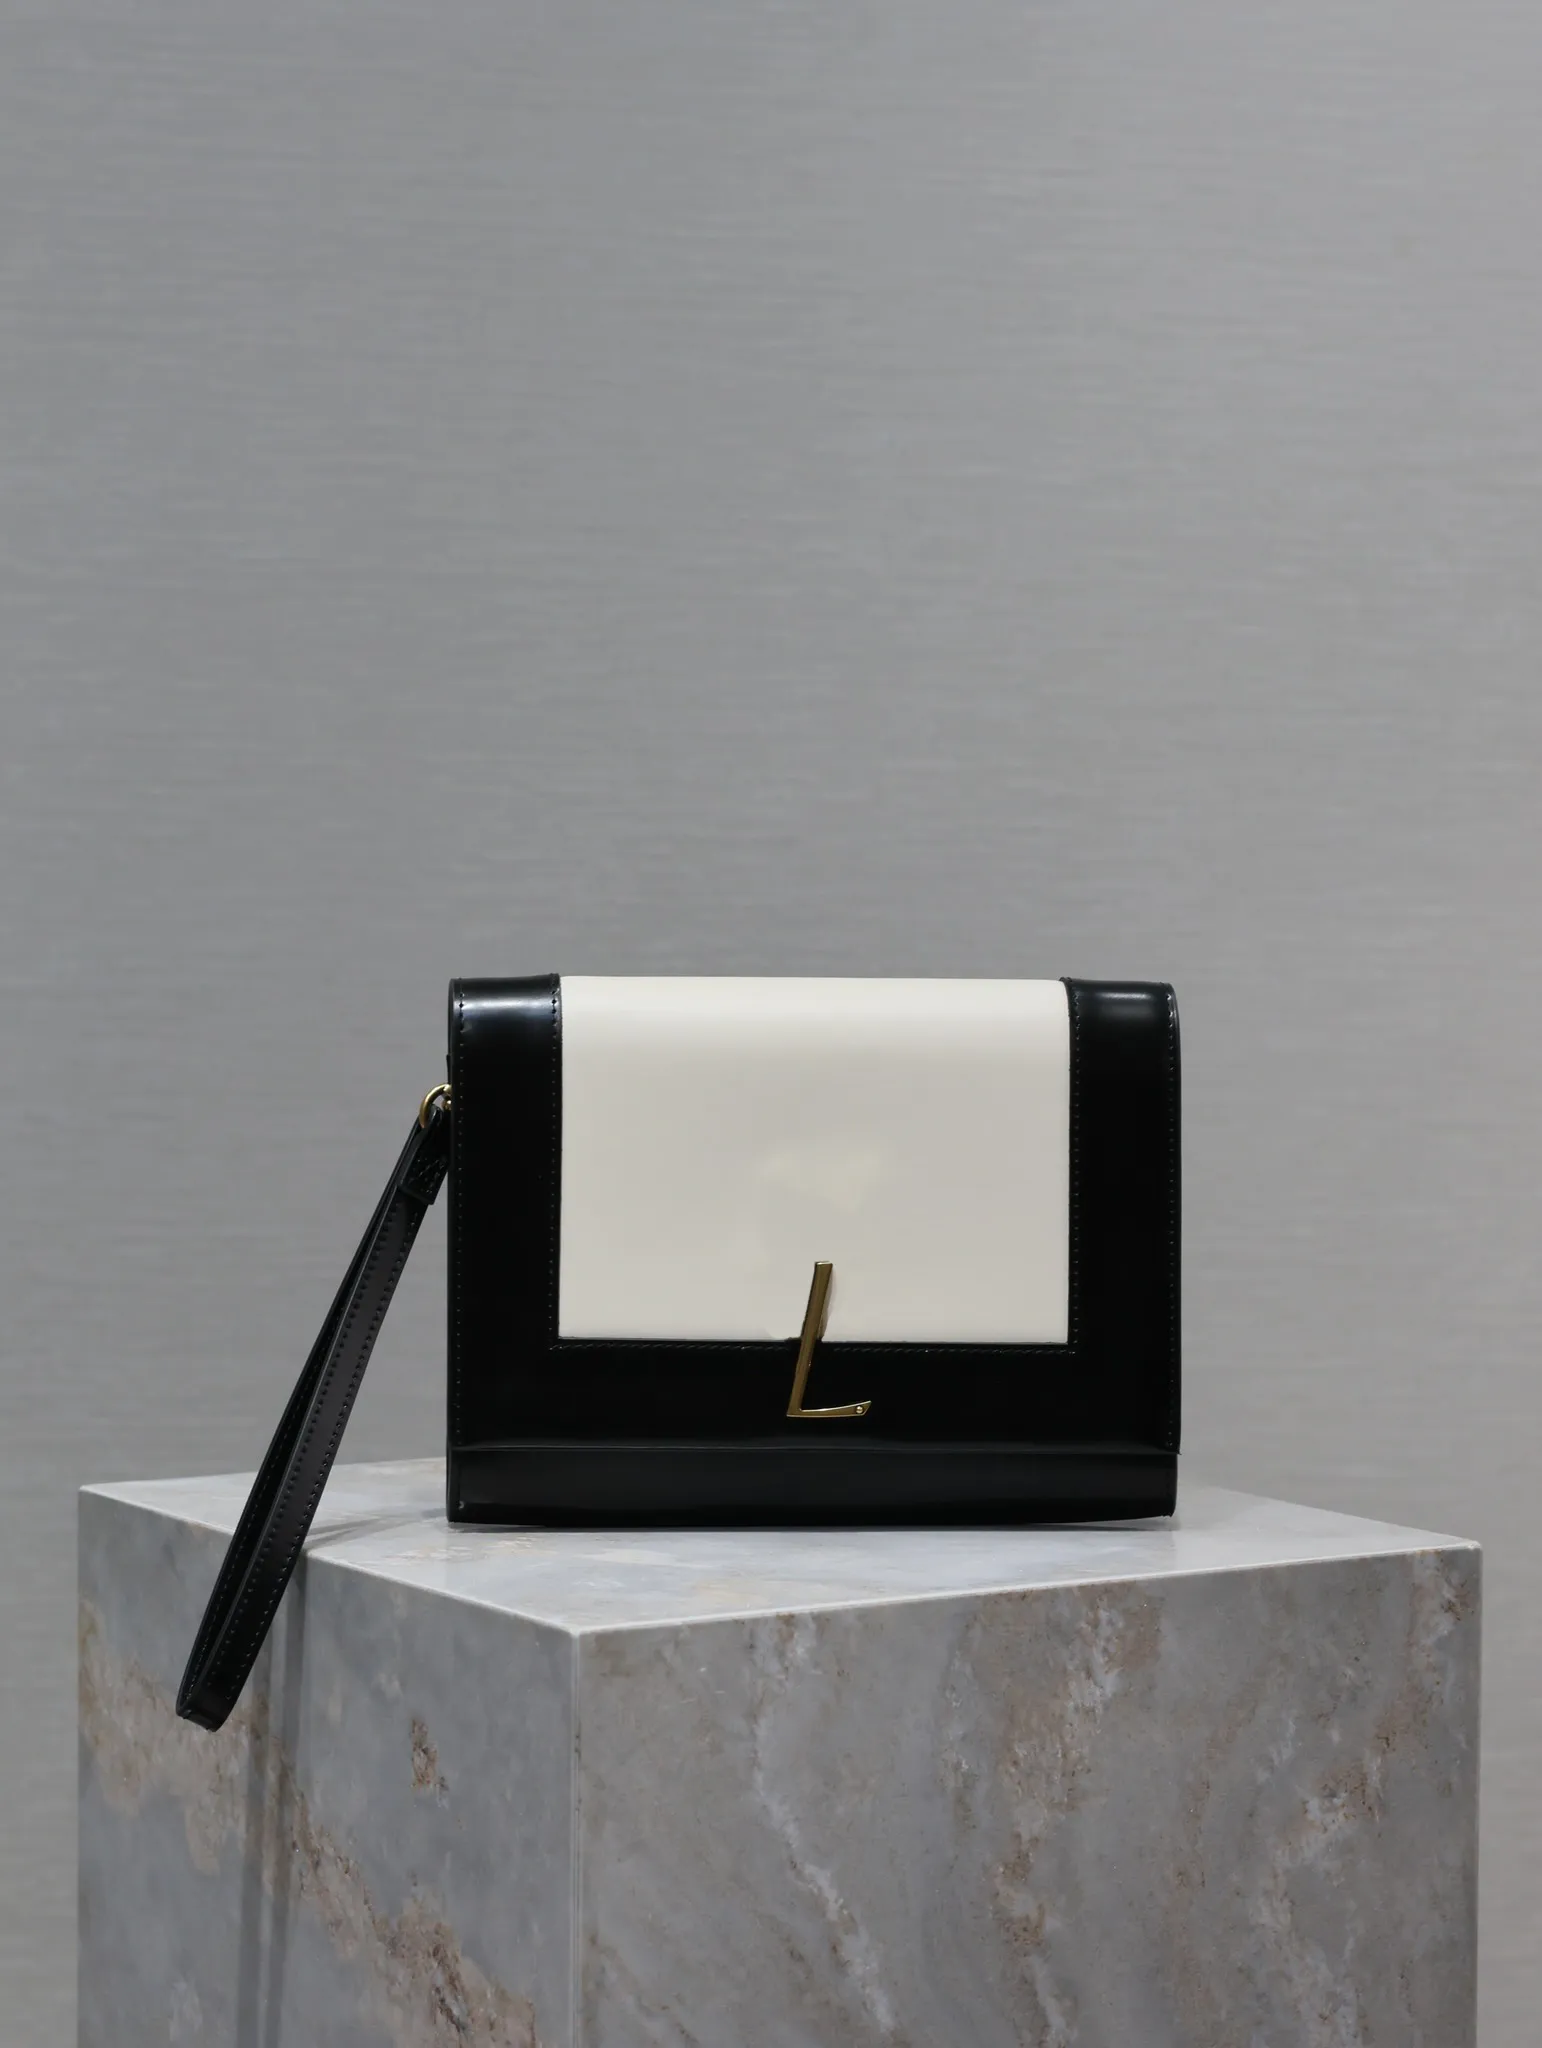 10a luksusowa torba designerska mężczyzna Kobiet Koperta torba ręczna portfel gładki krowia duża torba z klipsem metalowe logo